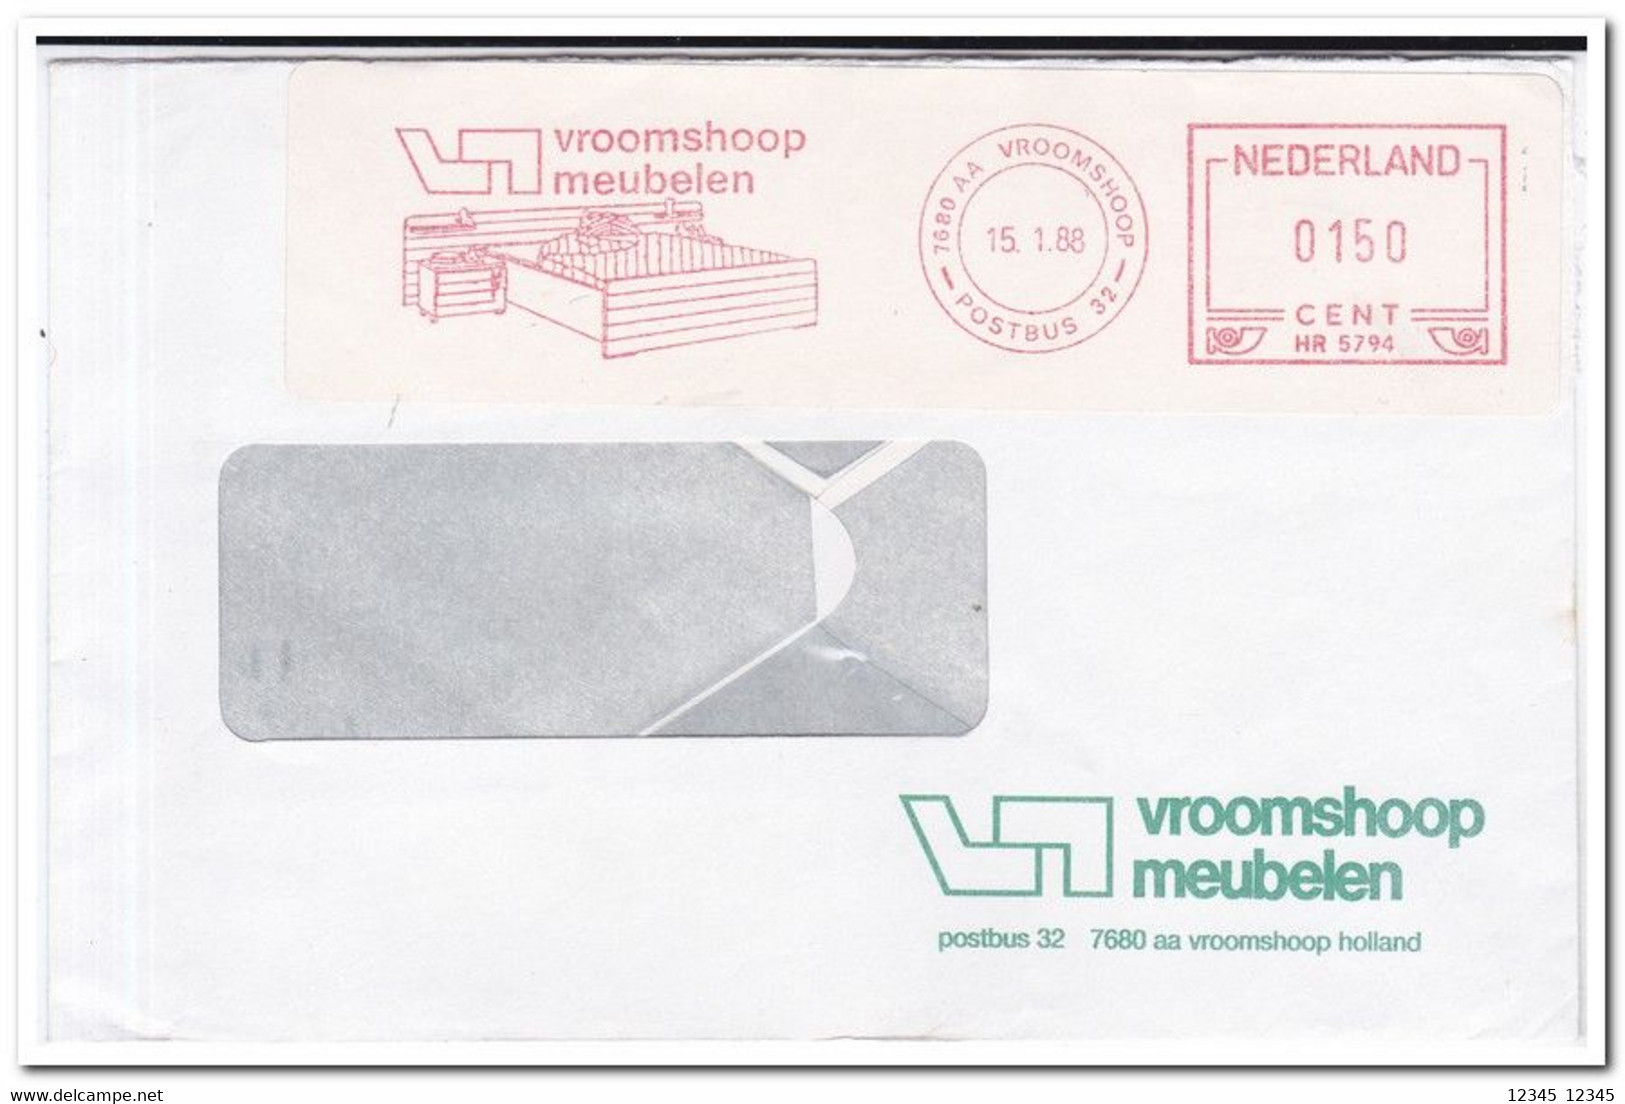 Nederland 1988, Vroomshoop Meubelen, Vroomshoop Furniture - Frankeermachines (EMA)